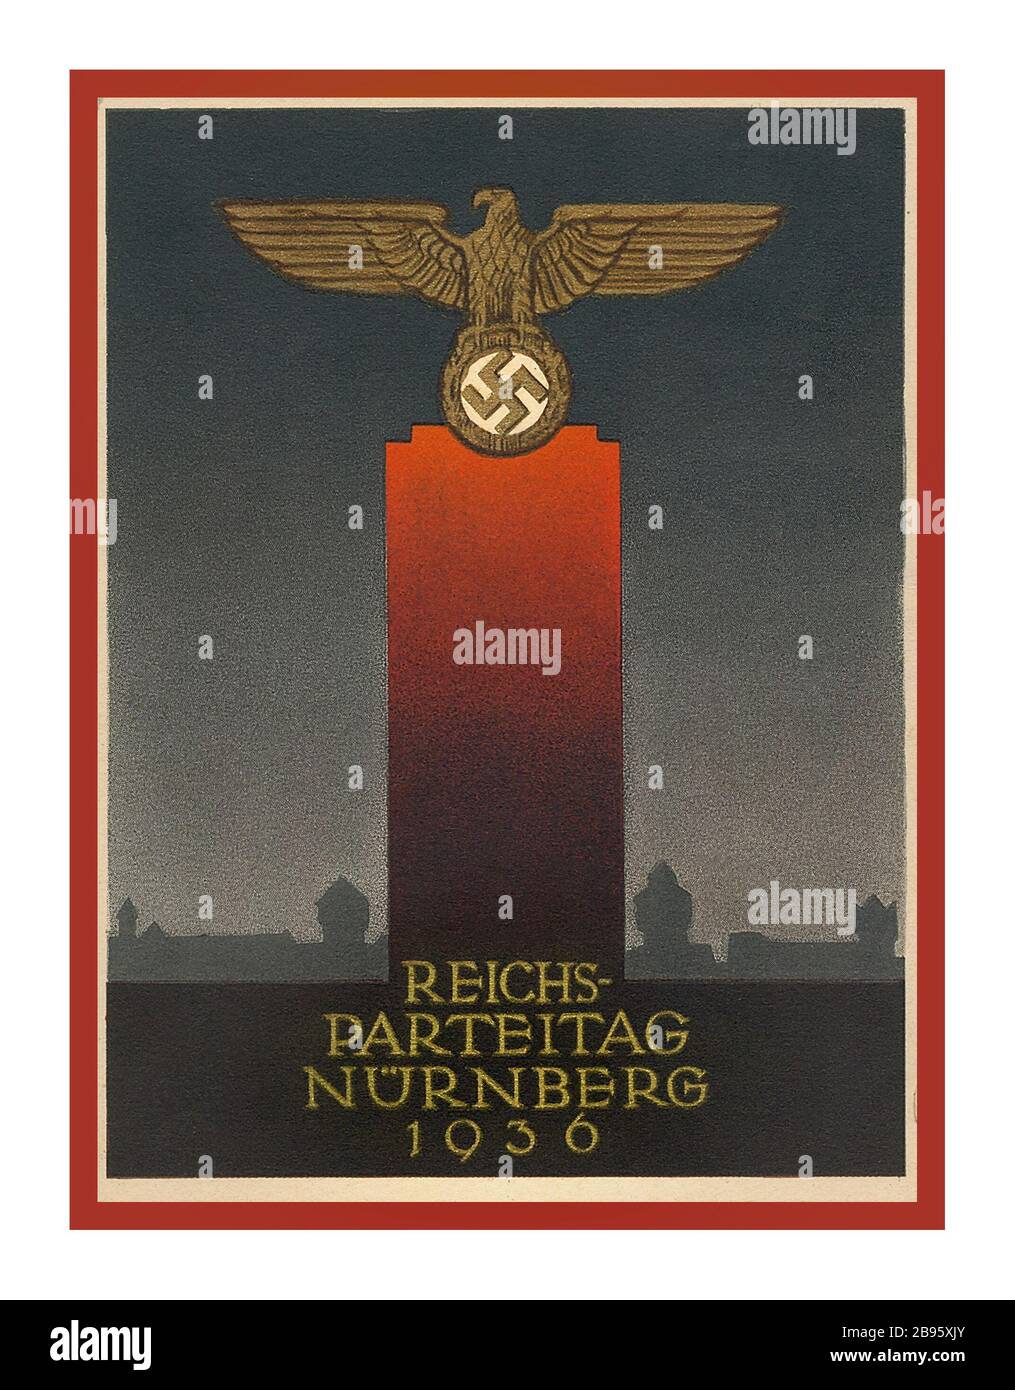 Vintage Nazi Propaganda 1936 Reichs Parteitag Nurnberg German Eagle avec nazi Swastika sur plinthe rouge Nurnberg Allemagne nazie Banque D'Images